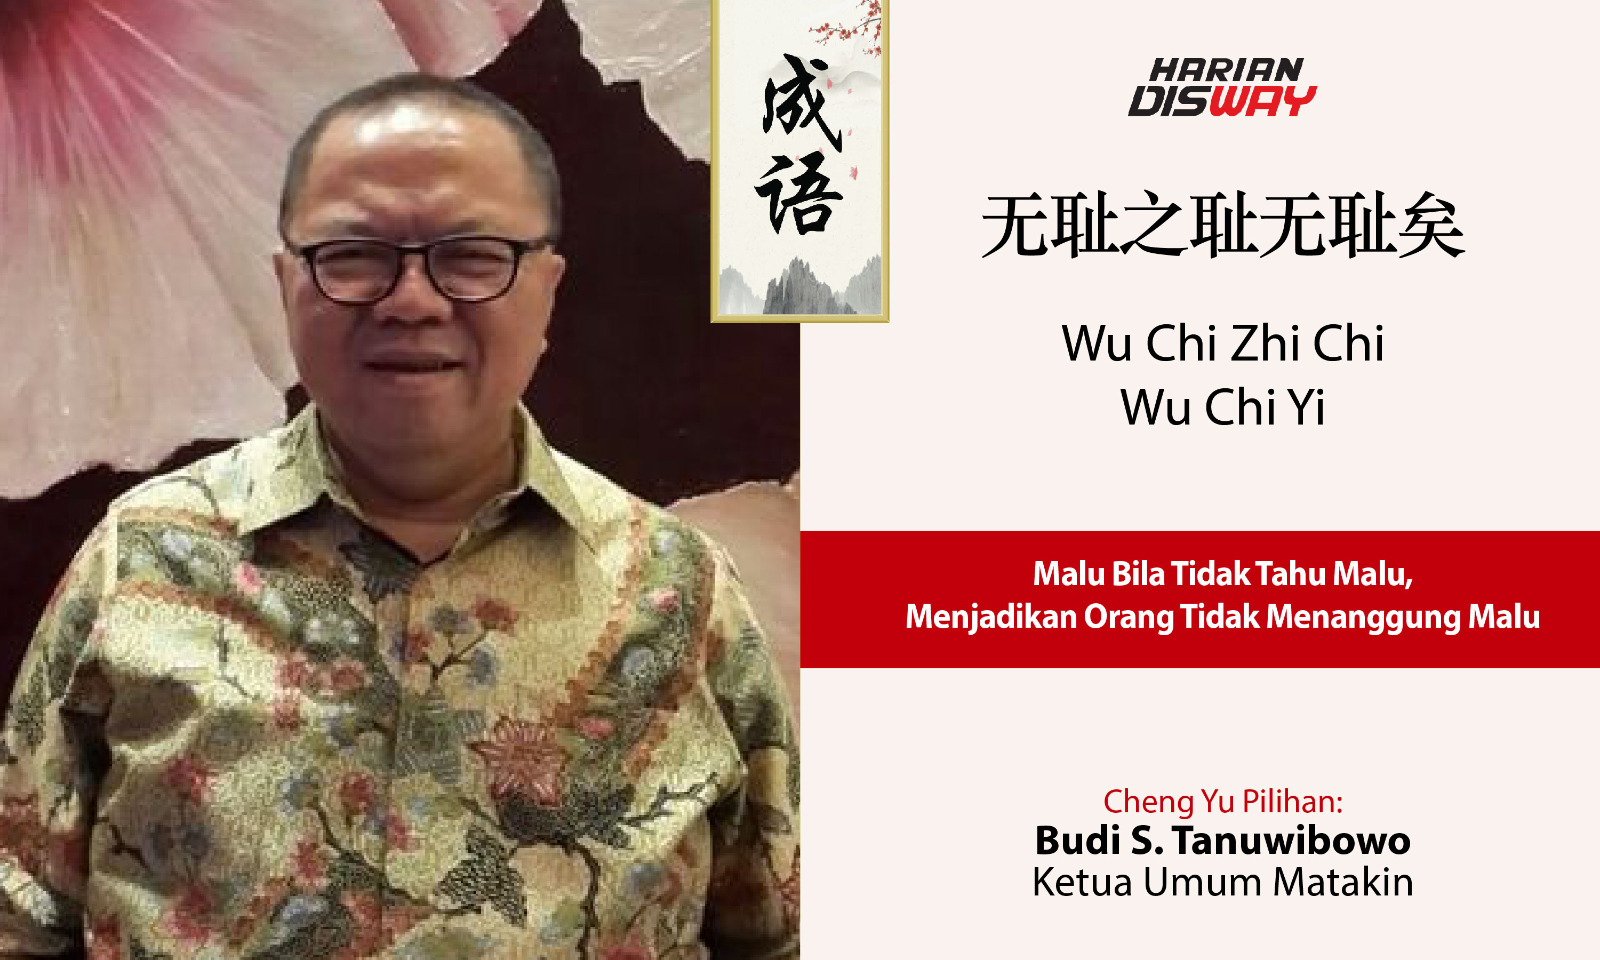 Cheng Yu Pilihan Ketua Umum Matakin Budi S. Tanuwibowo: Wu Chi Zhi Chi Wu Chi Yi